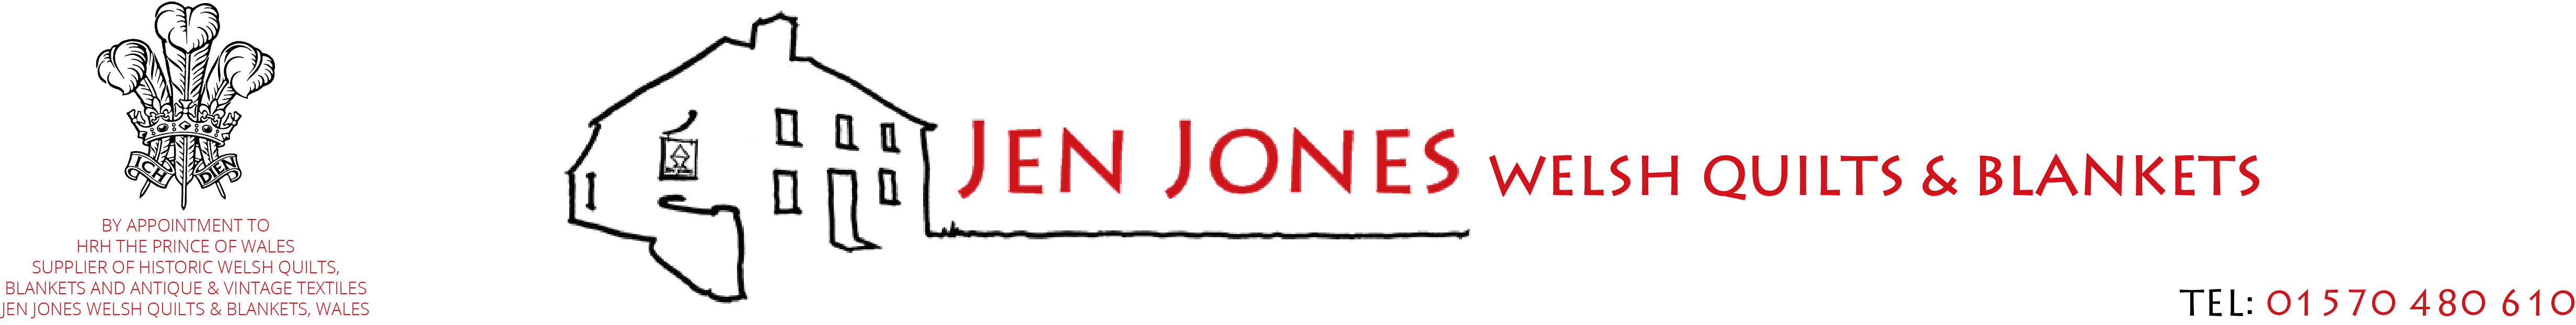 jen jones logo prince of wales warrant